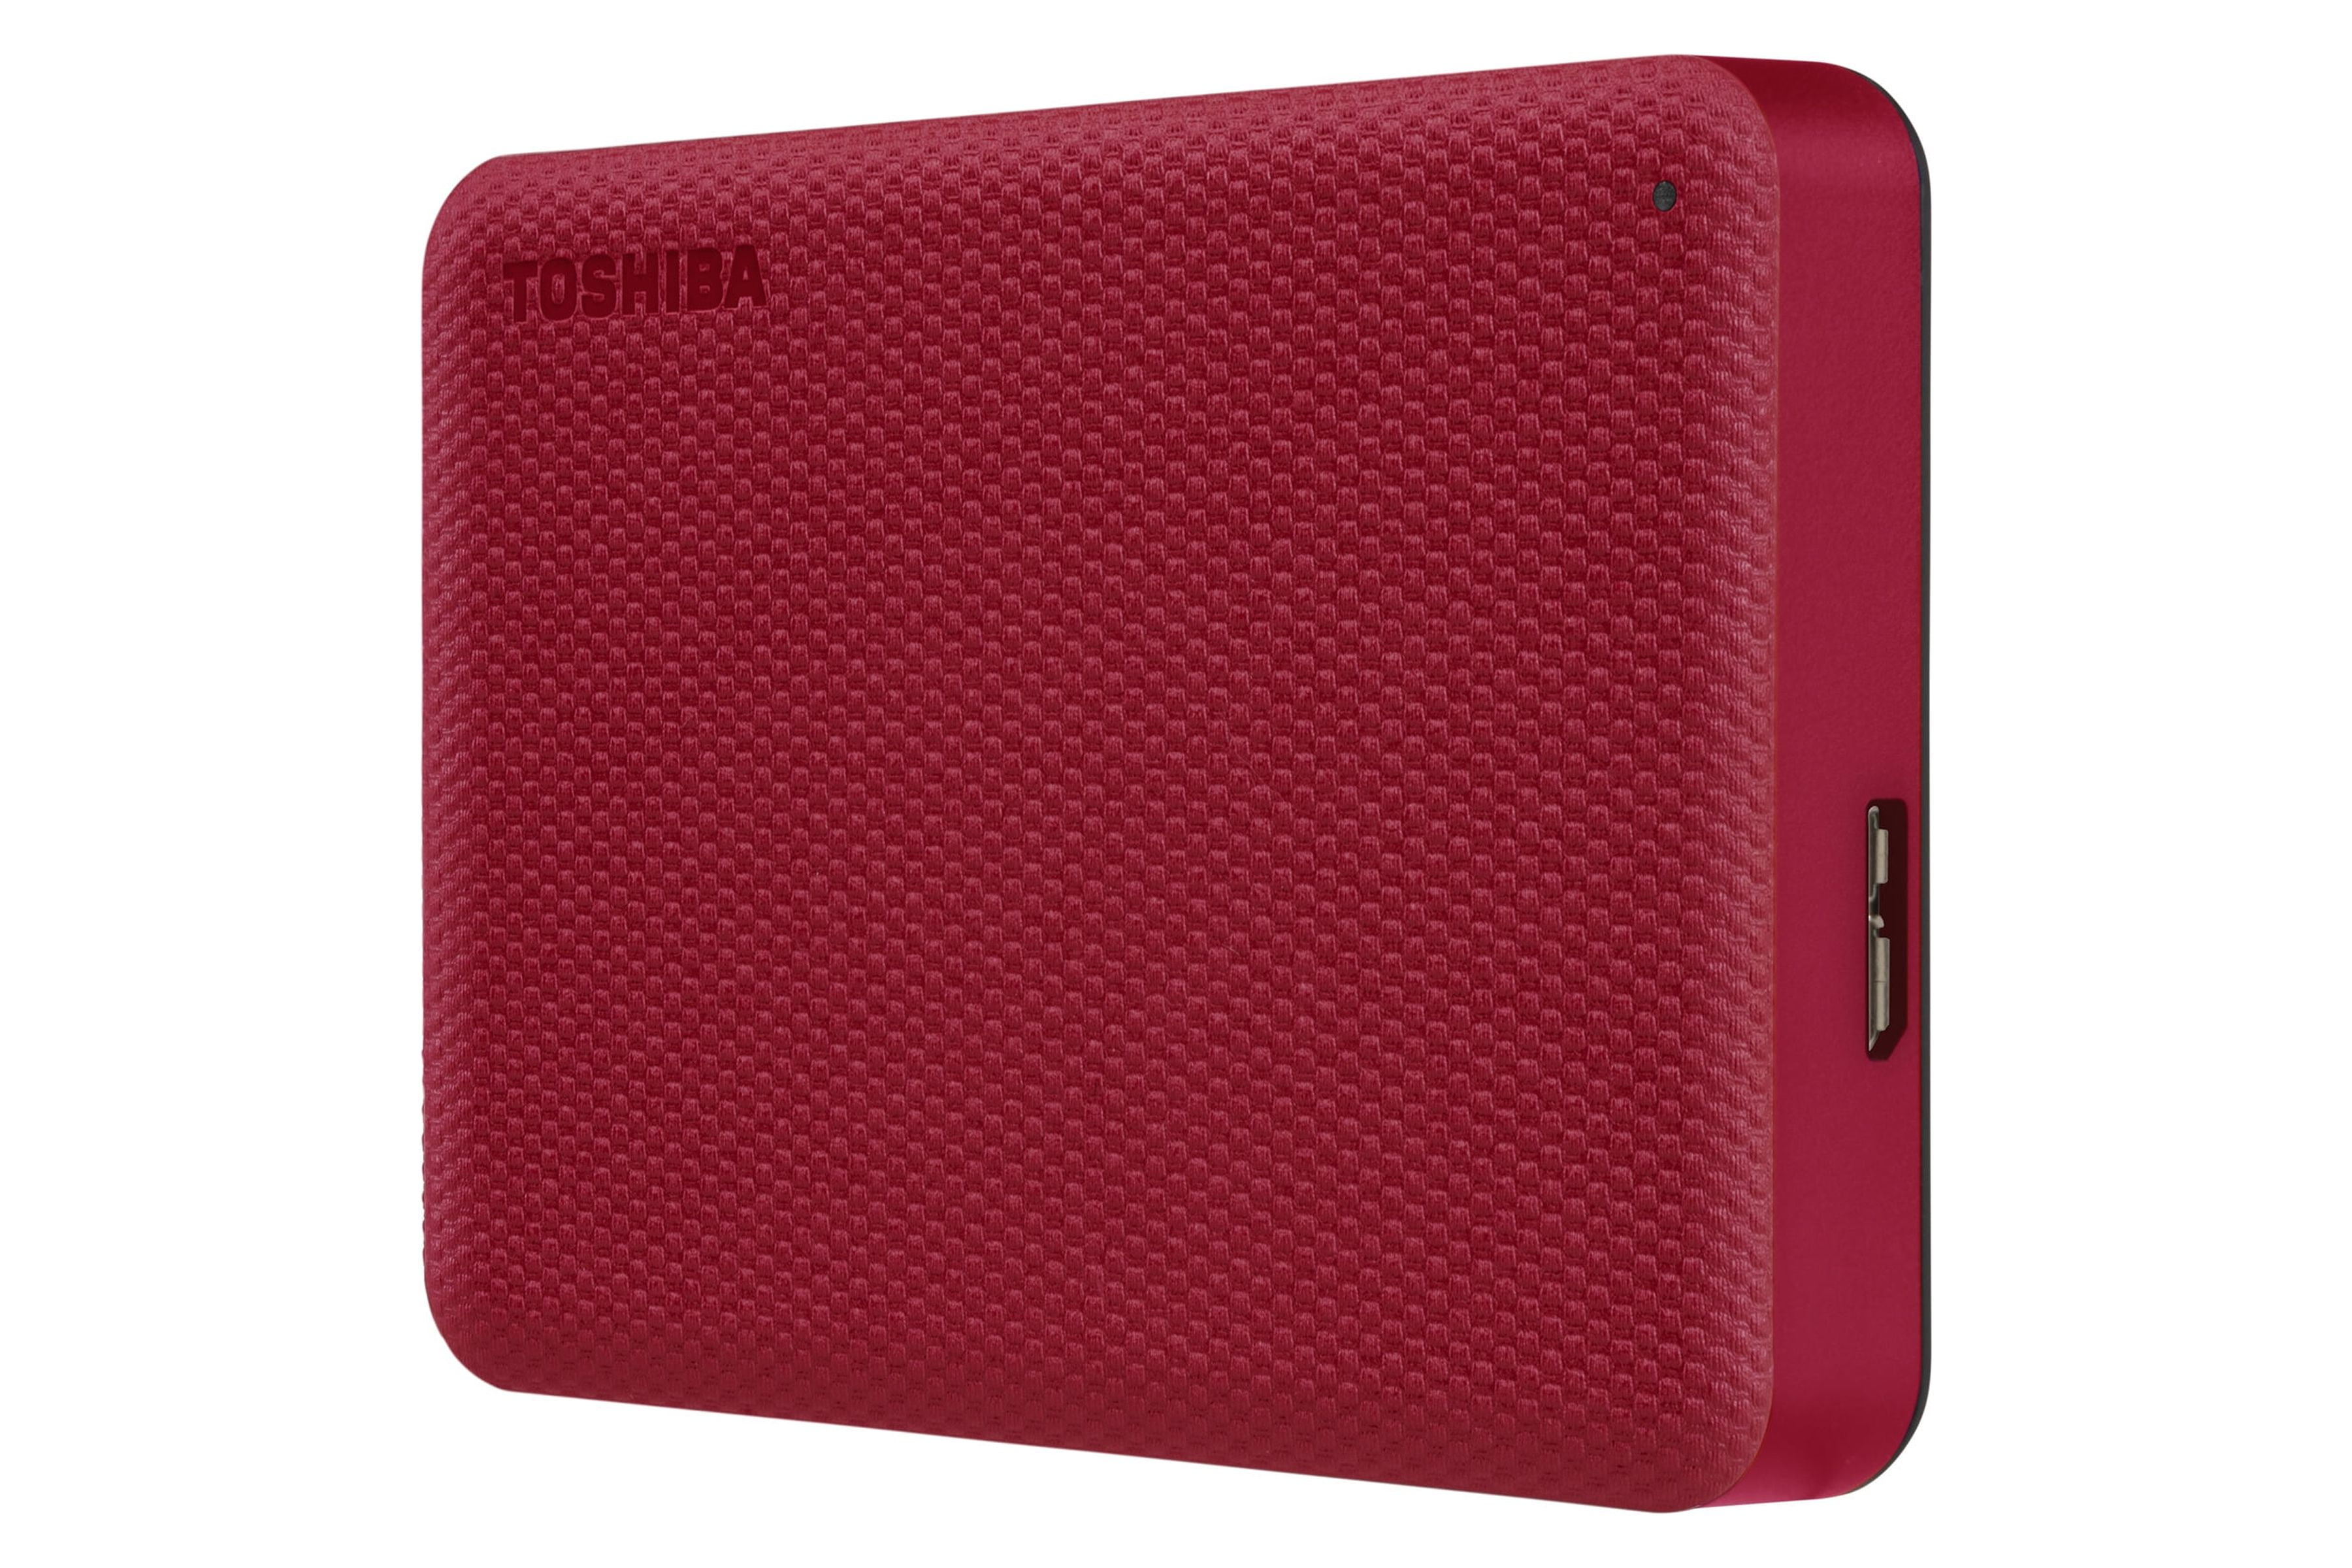 Portable - Hard Canvio Advance Toshiba RED 2TB Drive